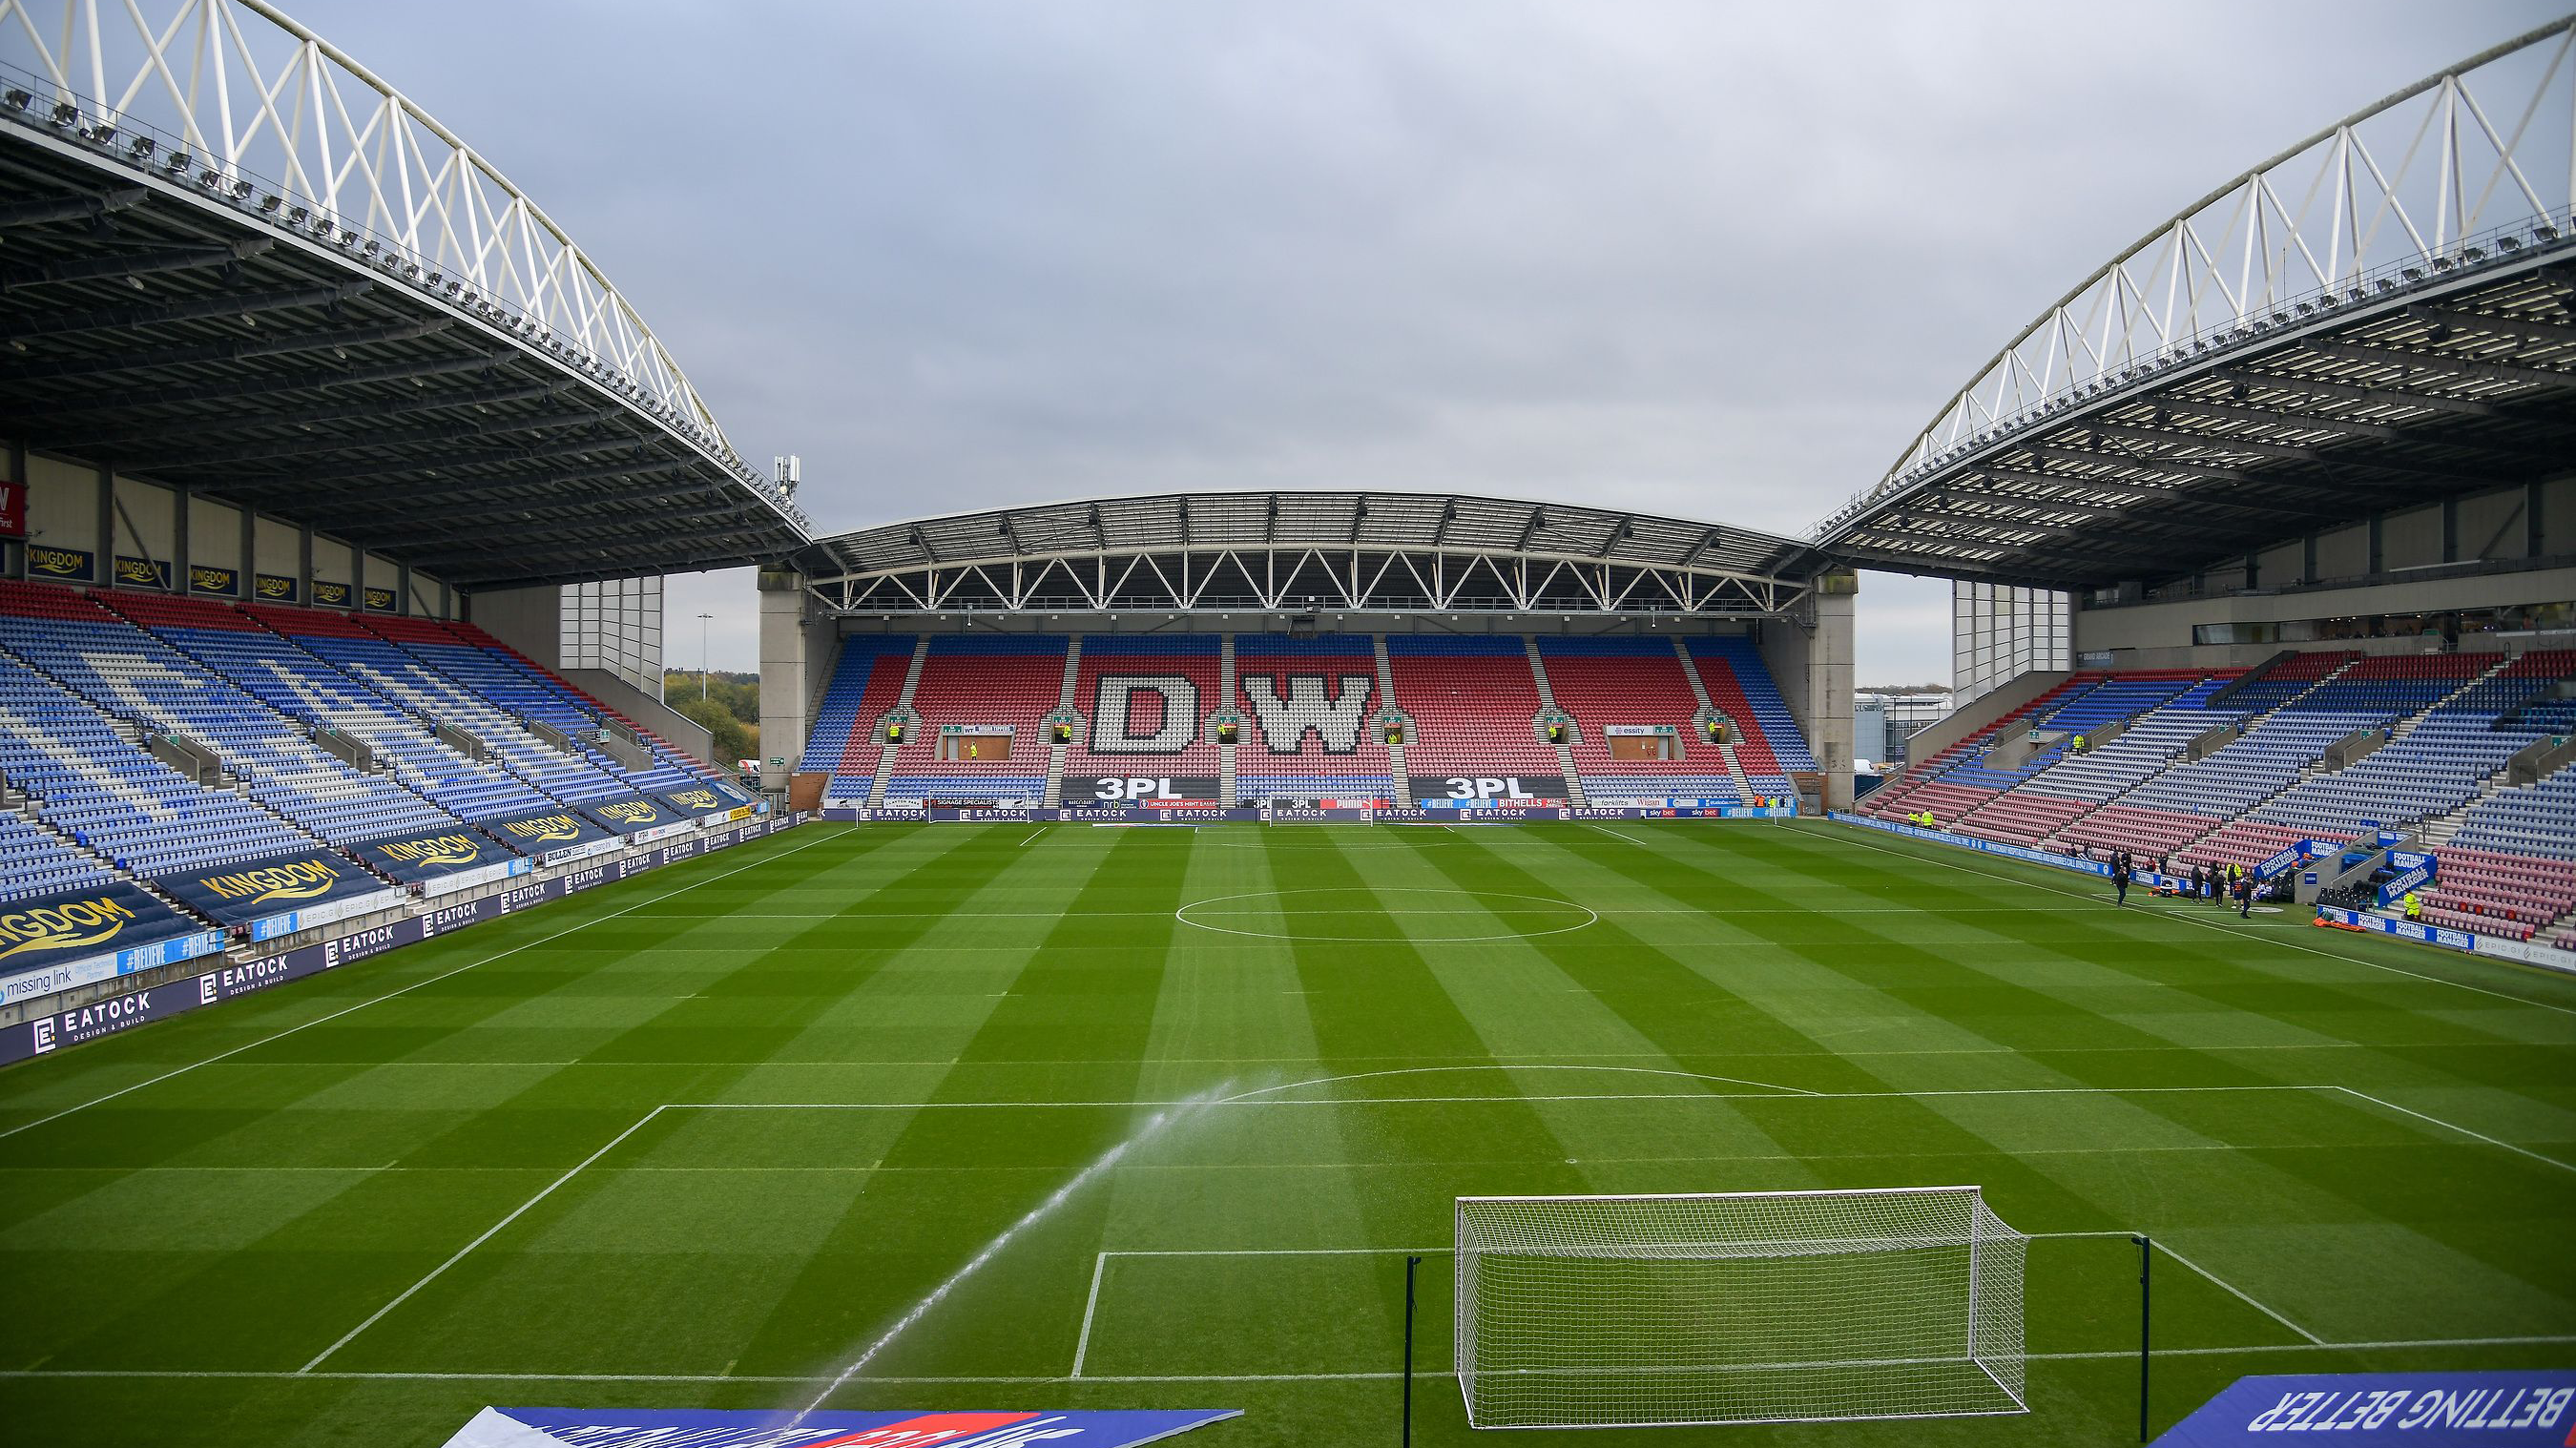 DW Stadium - Wigan Athletic